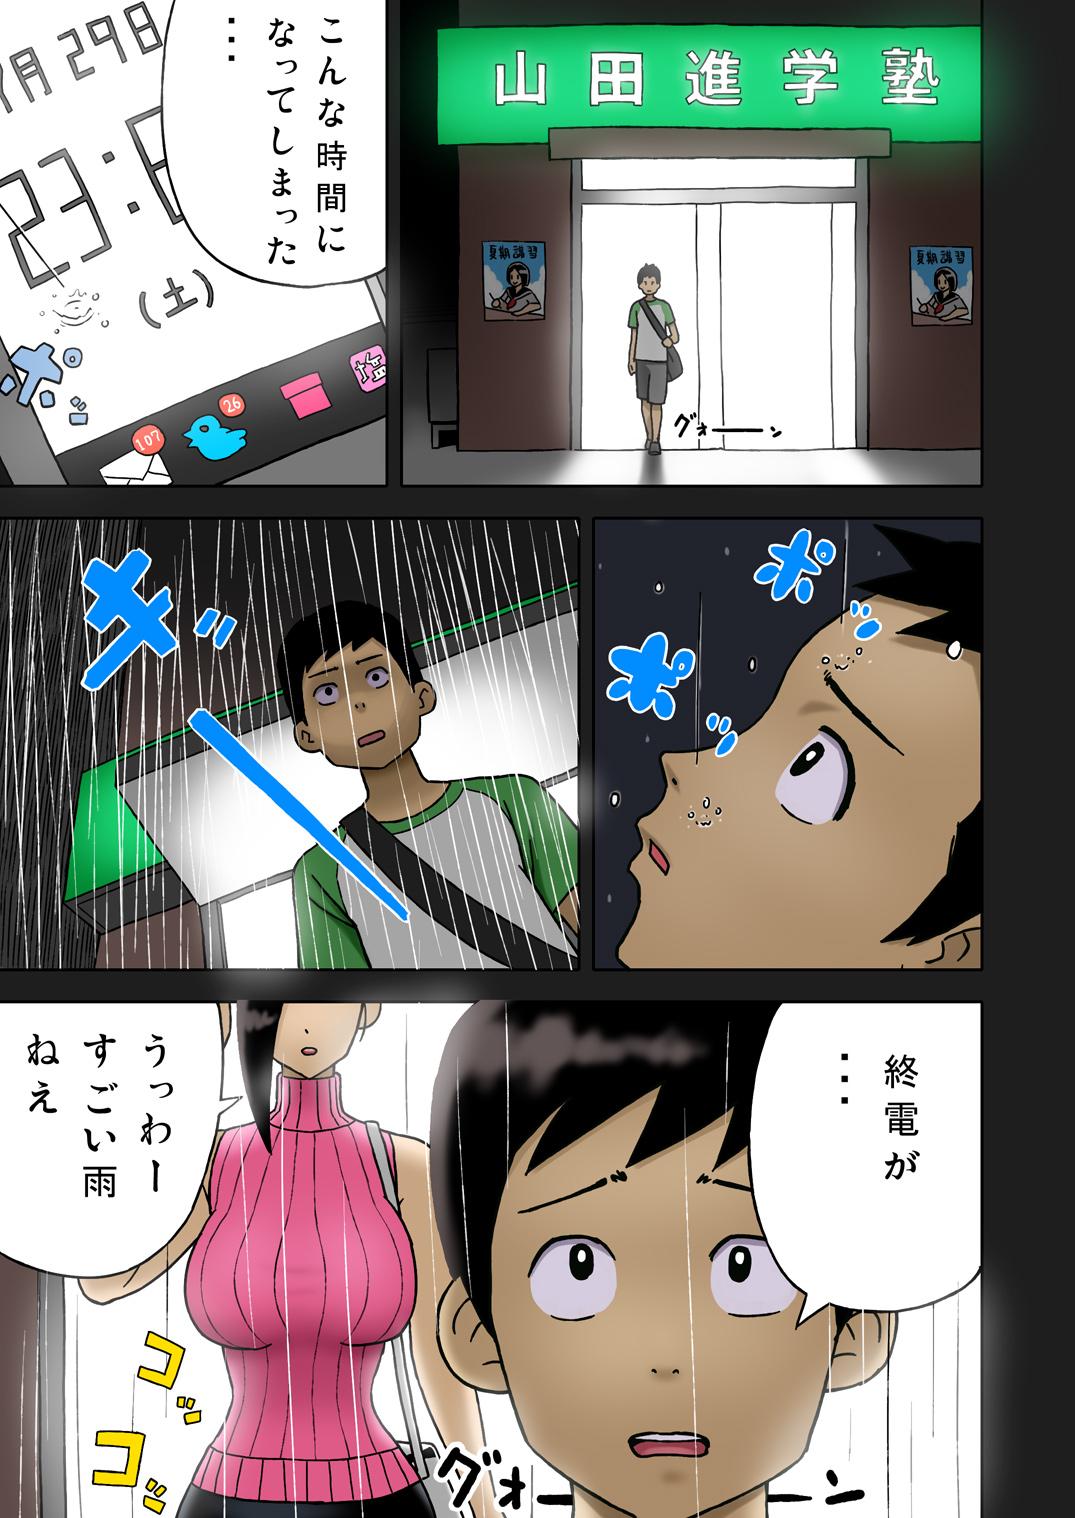 [Enka Boots] Enka Boots no Manga 1 - Juku no Sensei ga Joou-sama V2.0 4